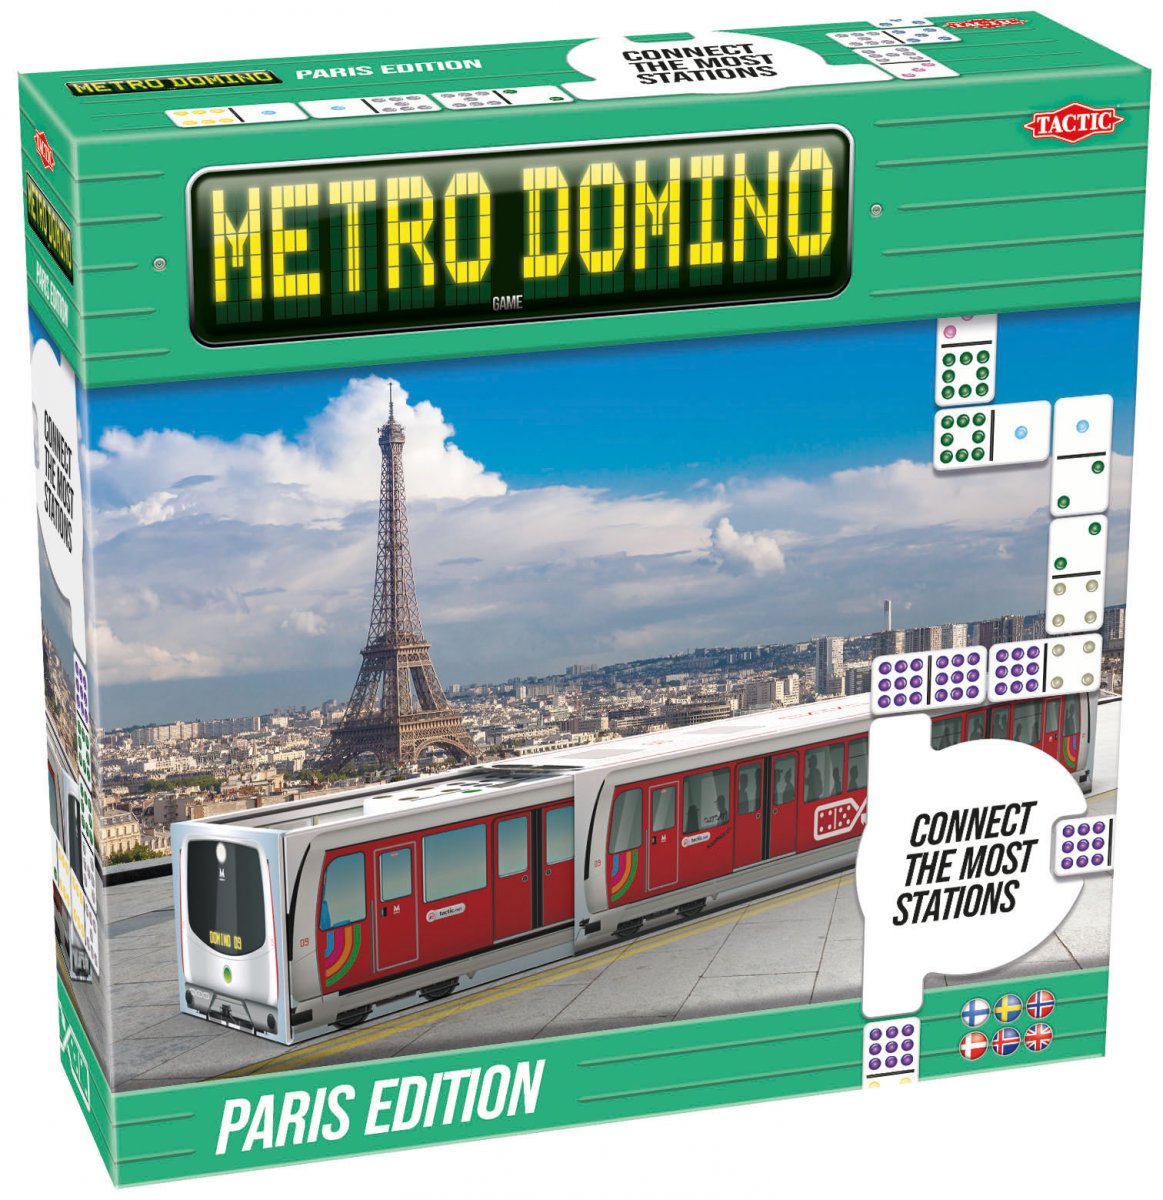 Metro Domino Paris